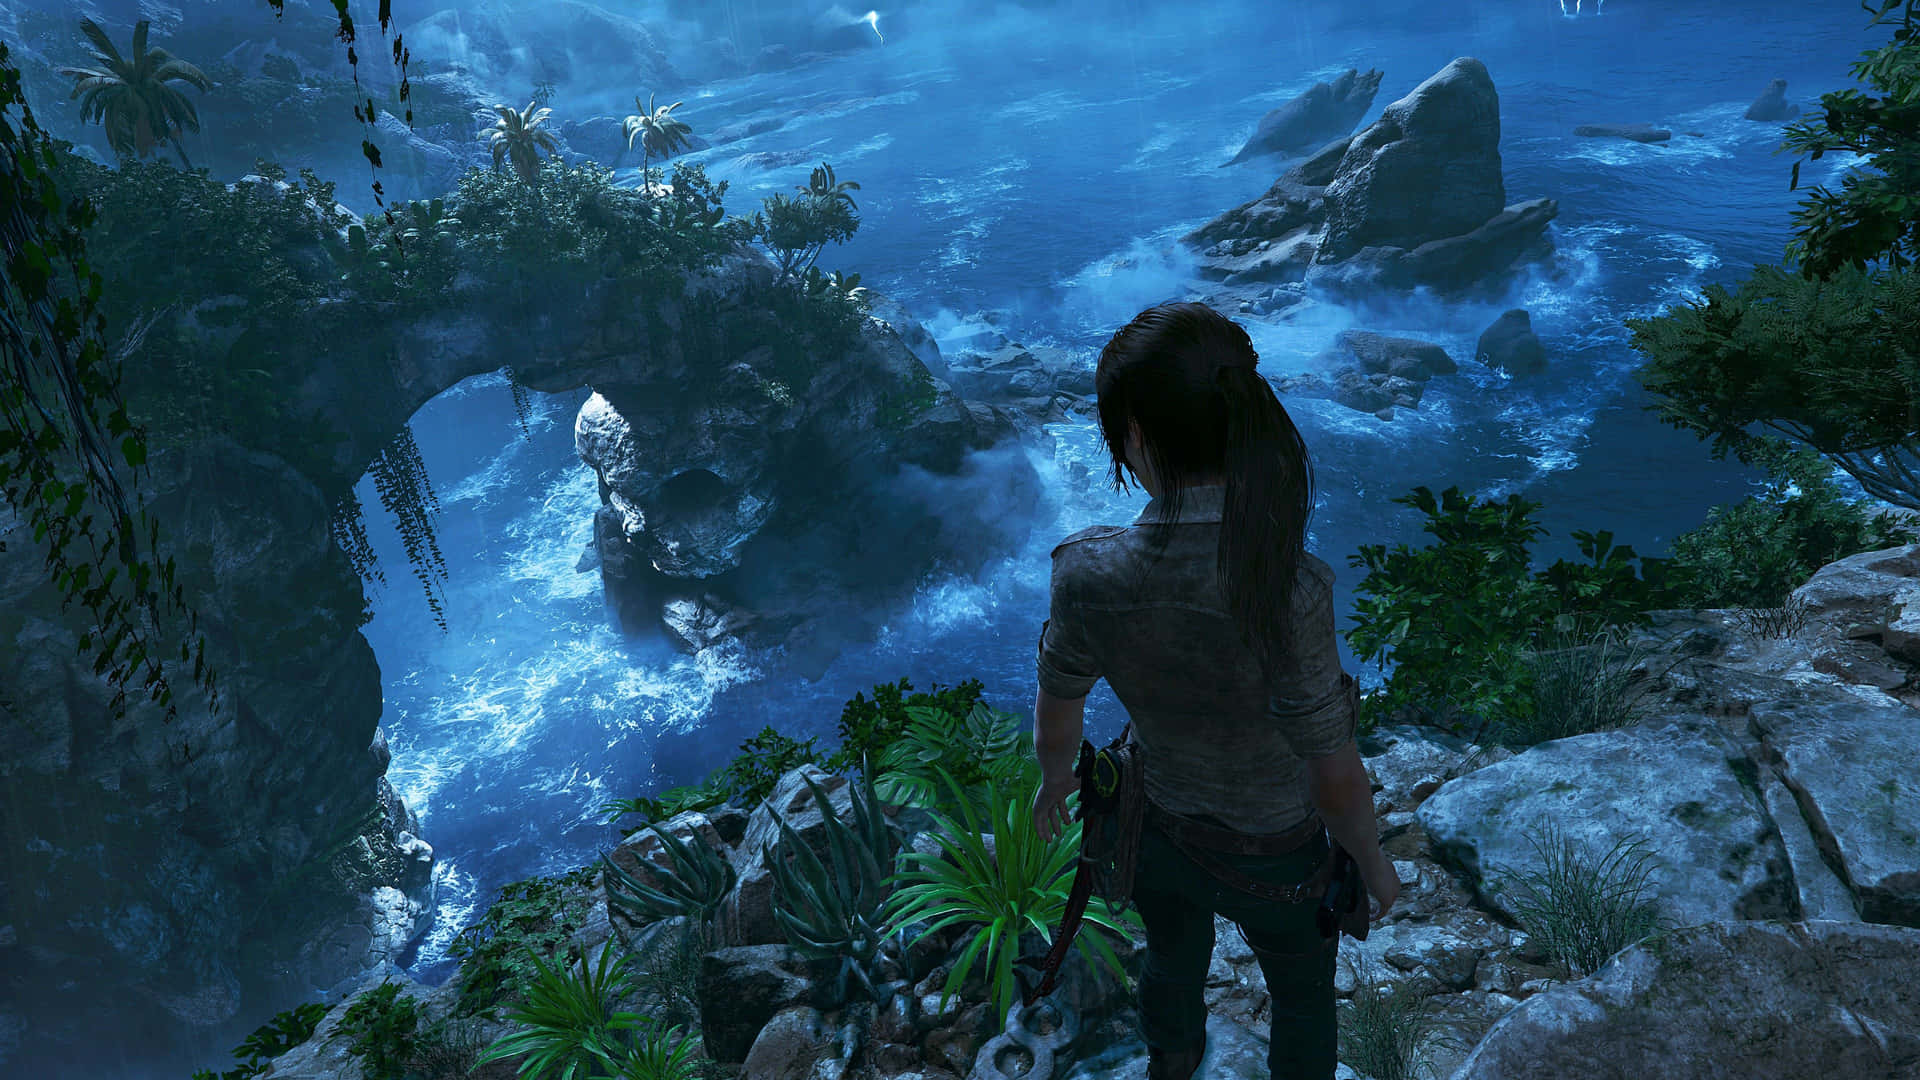 Fondode Pantalla De Shadow Of The Tomb Raider, Videojuego De Acción Y Aventura En 4k.